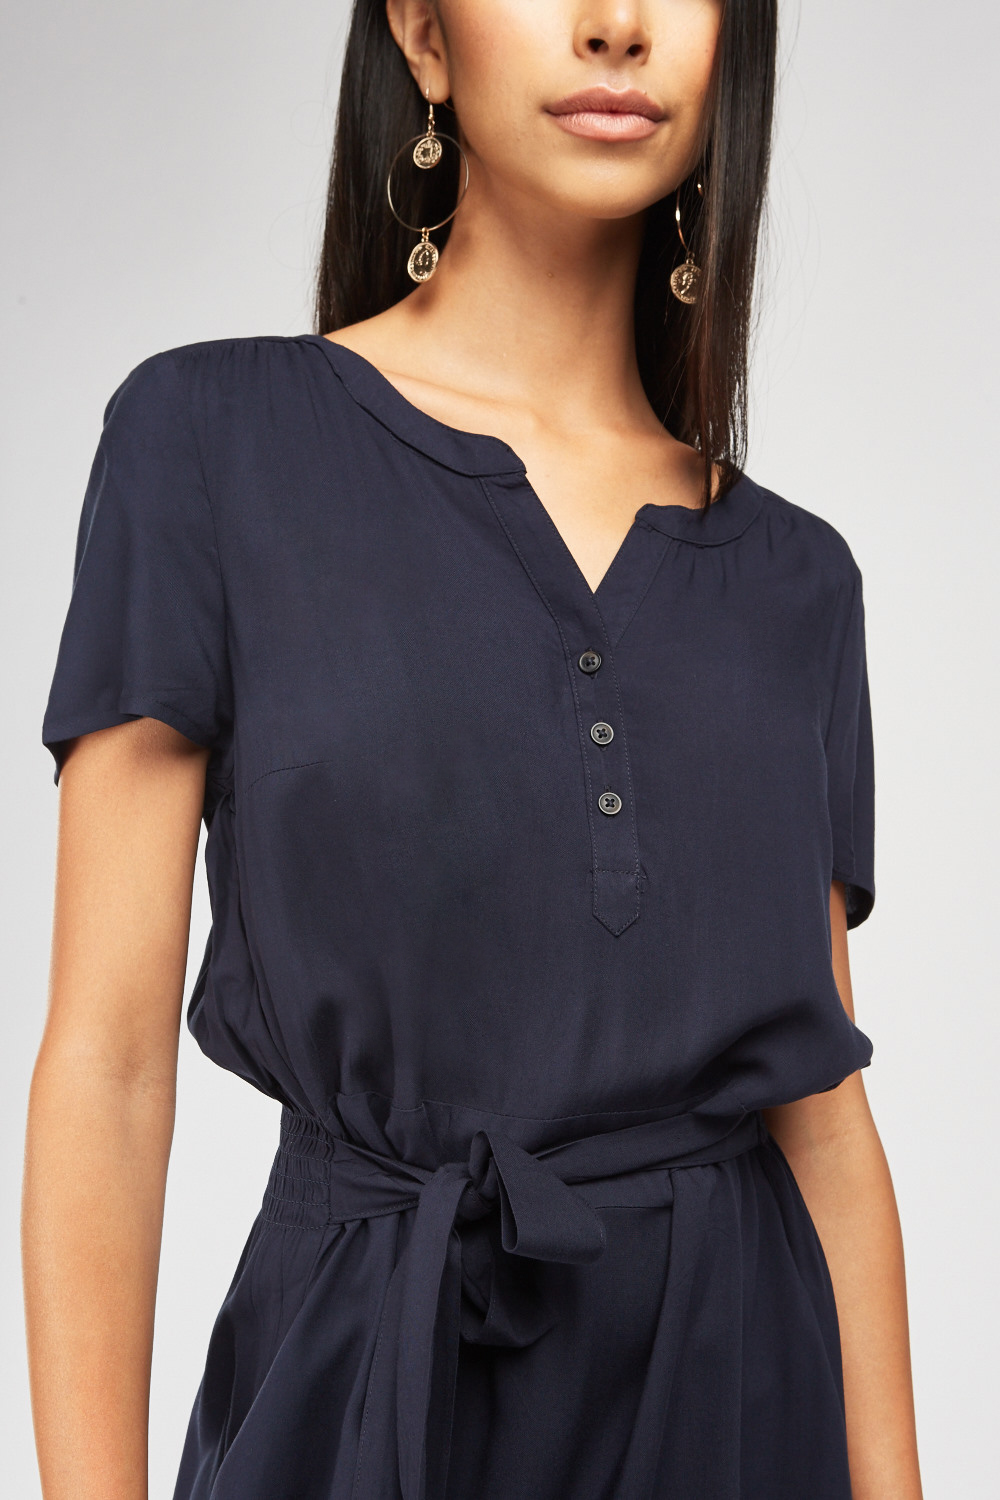 Short Sleeve Midi Tea Dress - Just $6